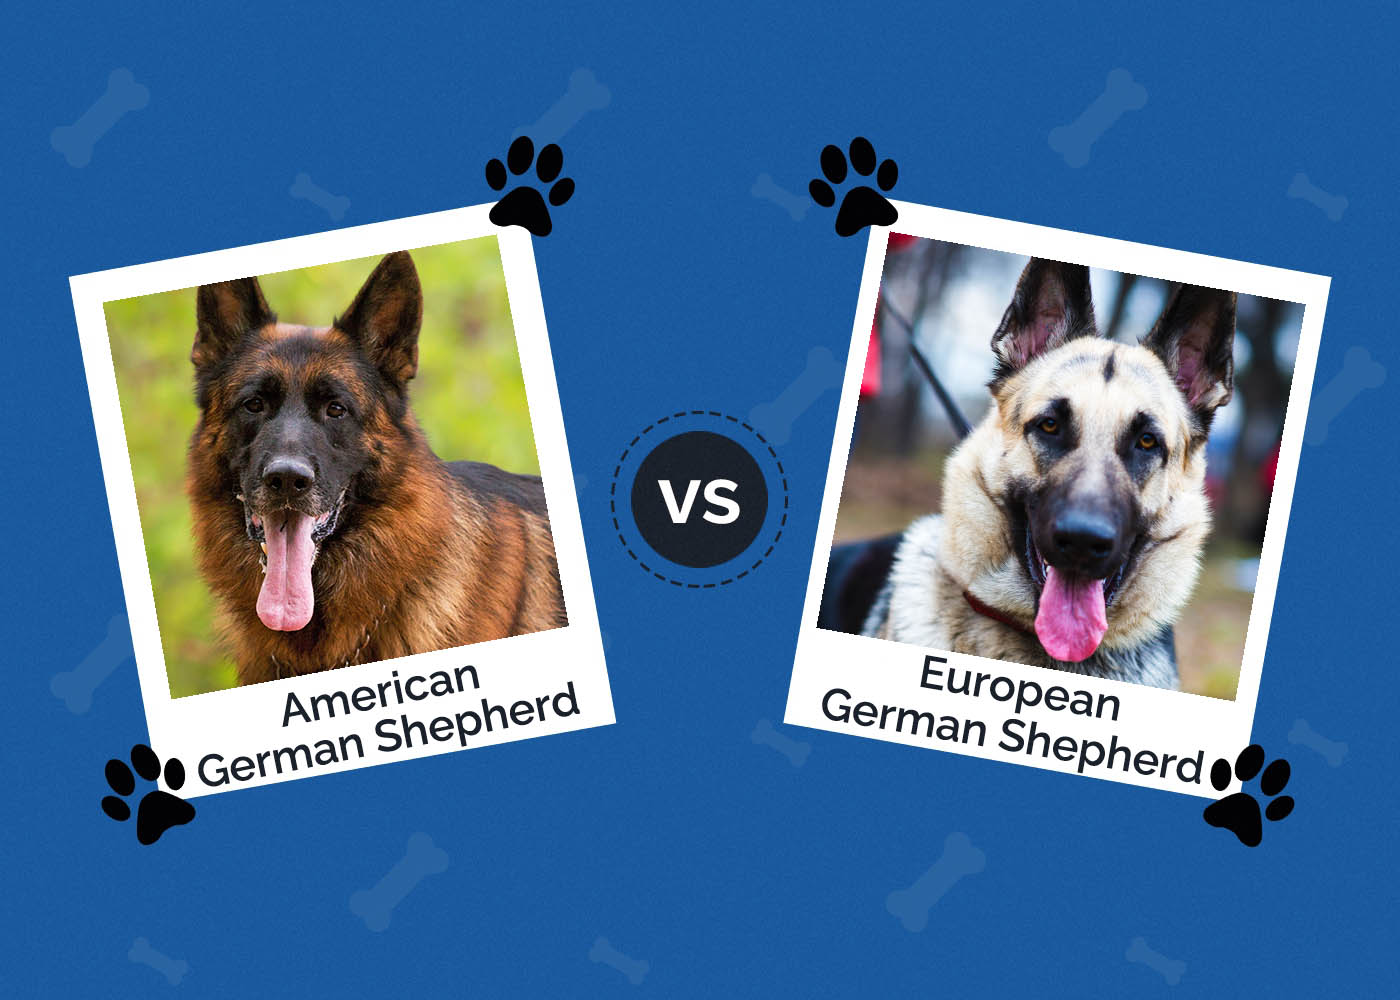 American vs European German Shepherd